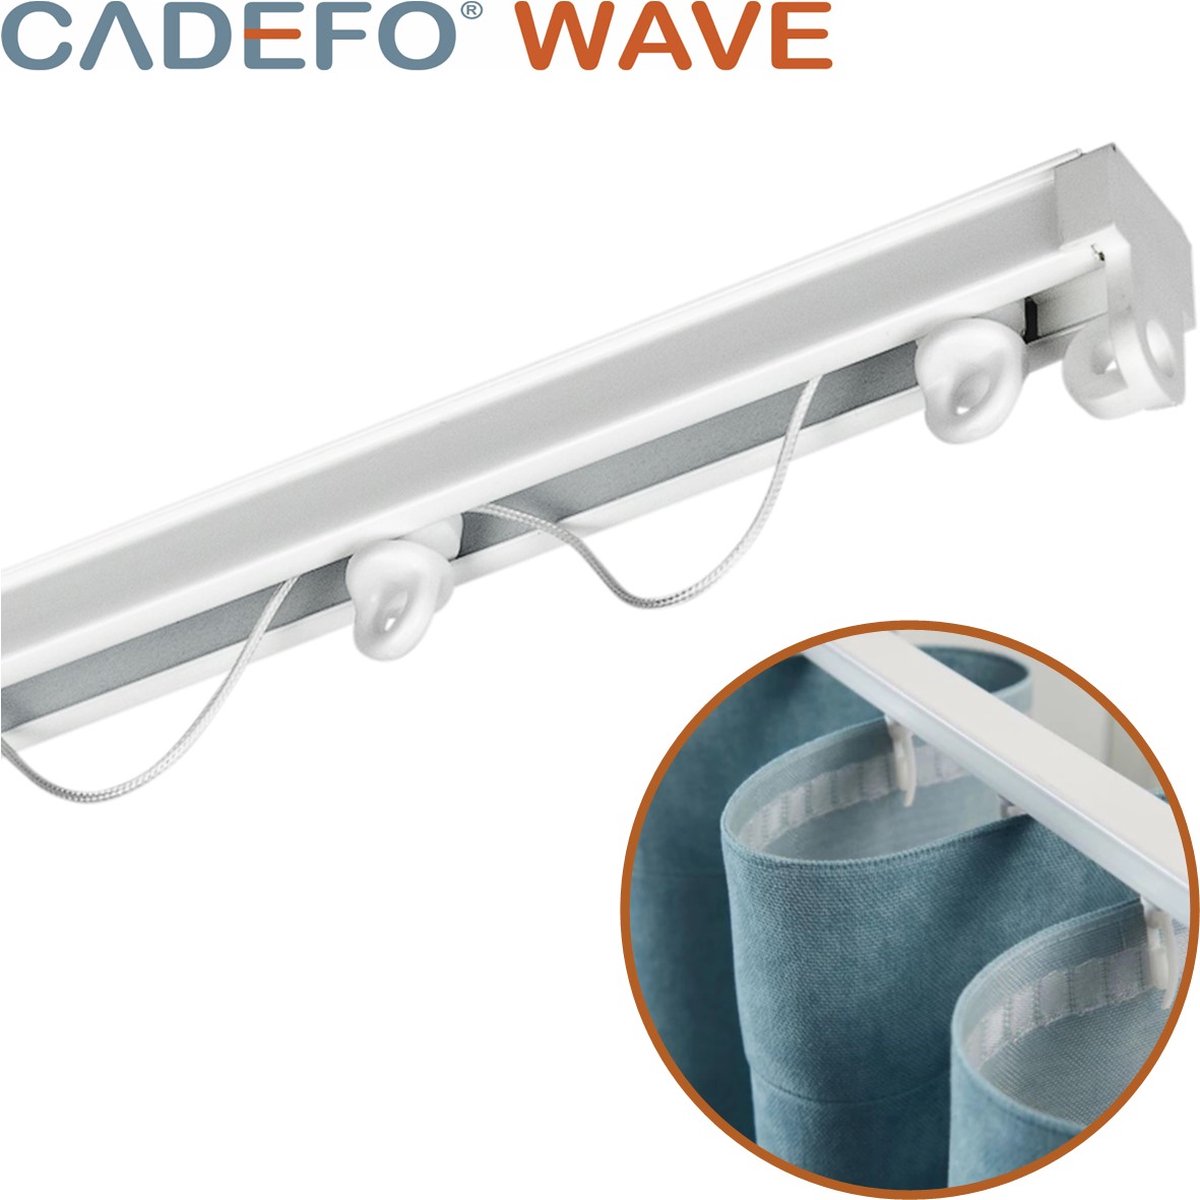 CADEFO WAVE (551 - 600 cm) Gordijnrails - Compleet op maat! - UIT 1 STUK - Leverbaar tot 6 meter - Plafondbevestiging - Lengte 580 cm